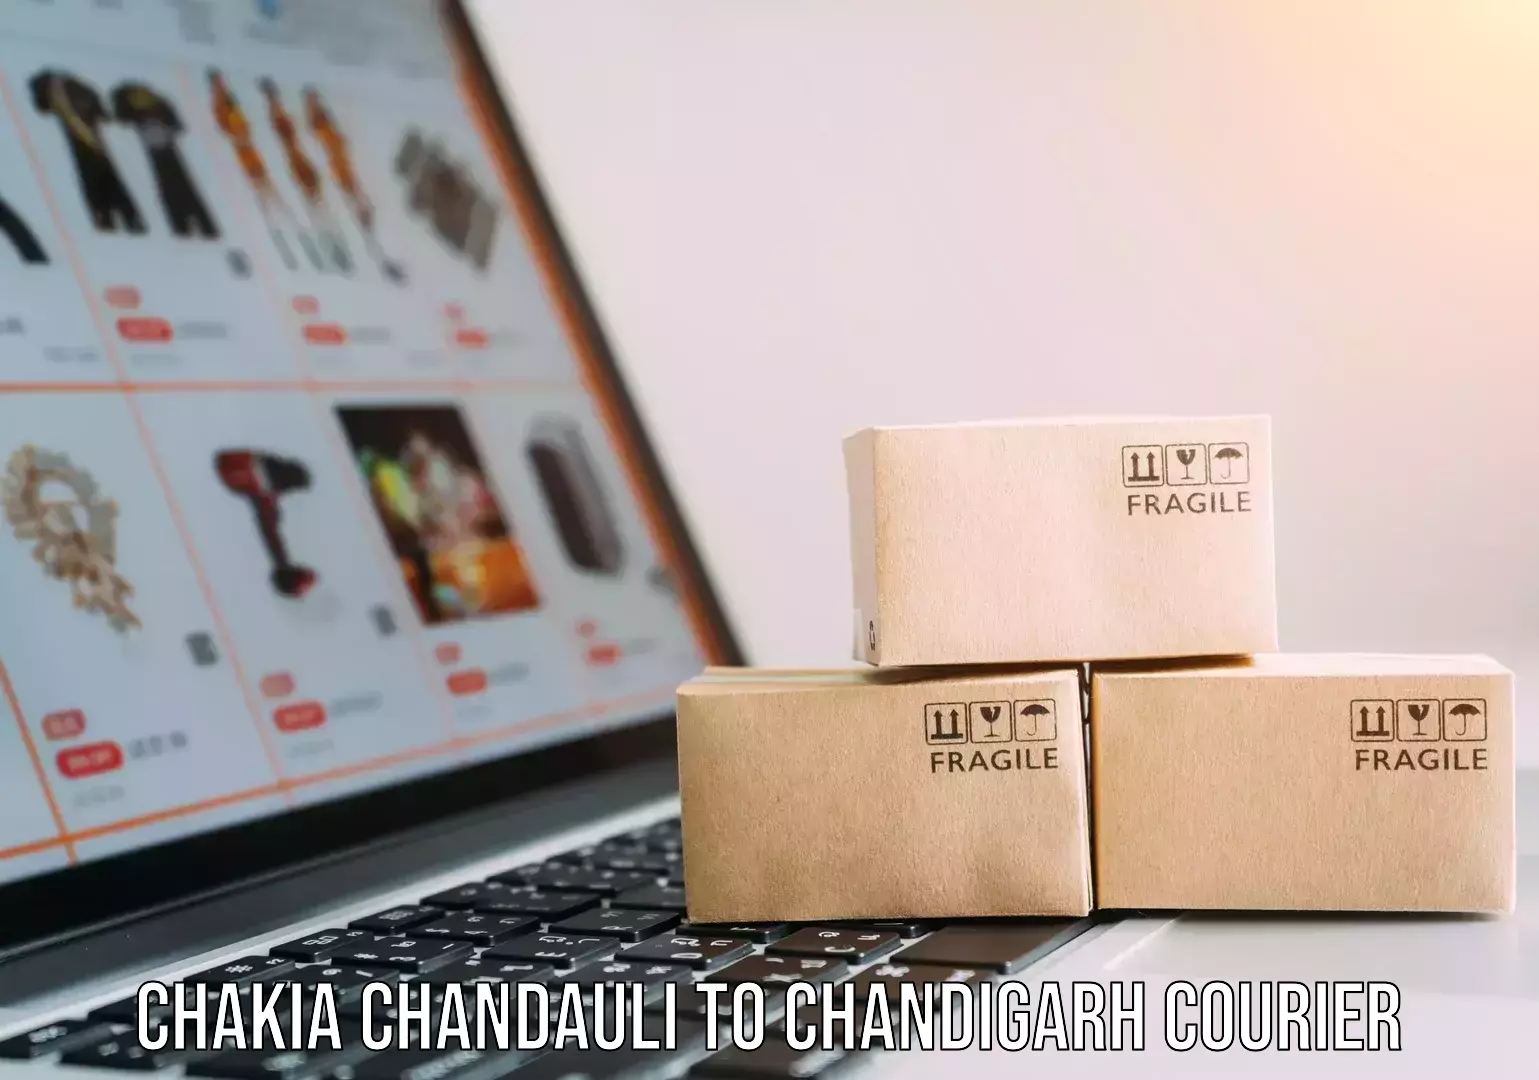 International logistics Chakia Chandauli to Chandigarh